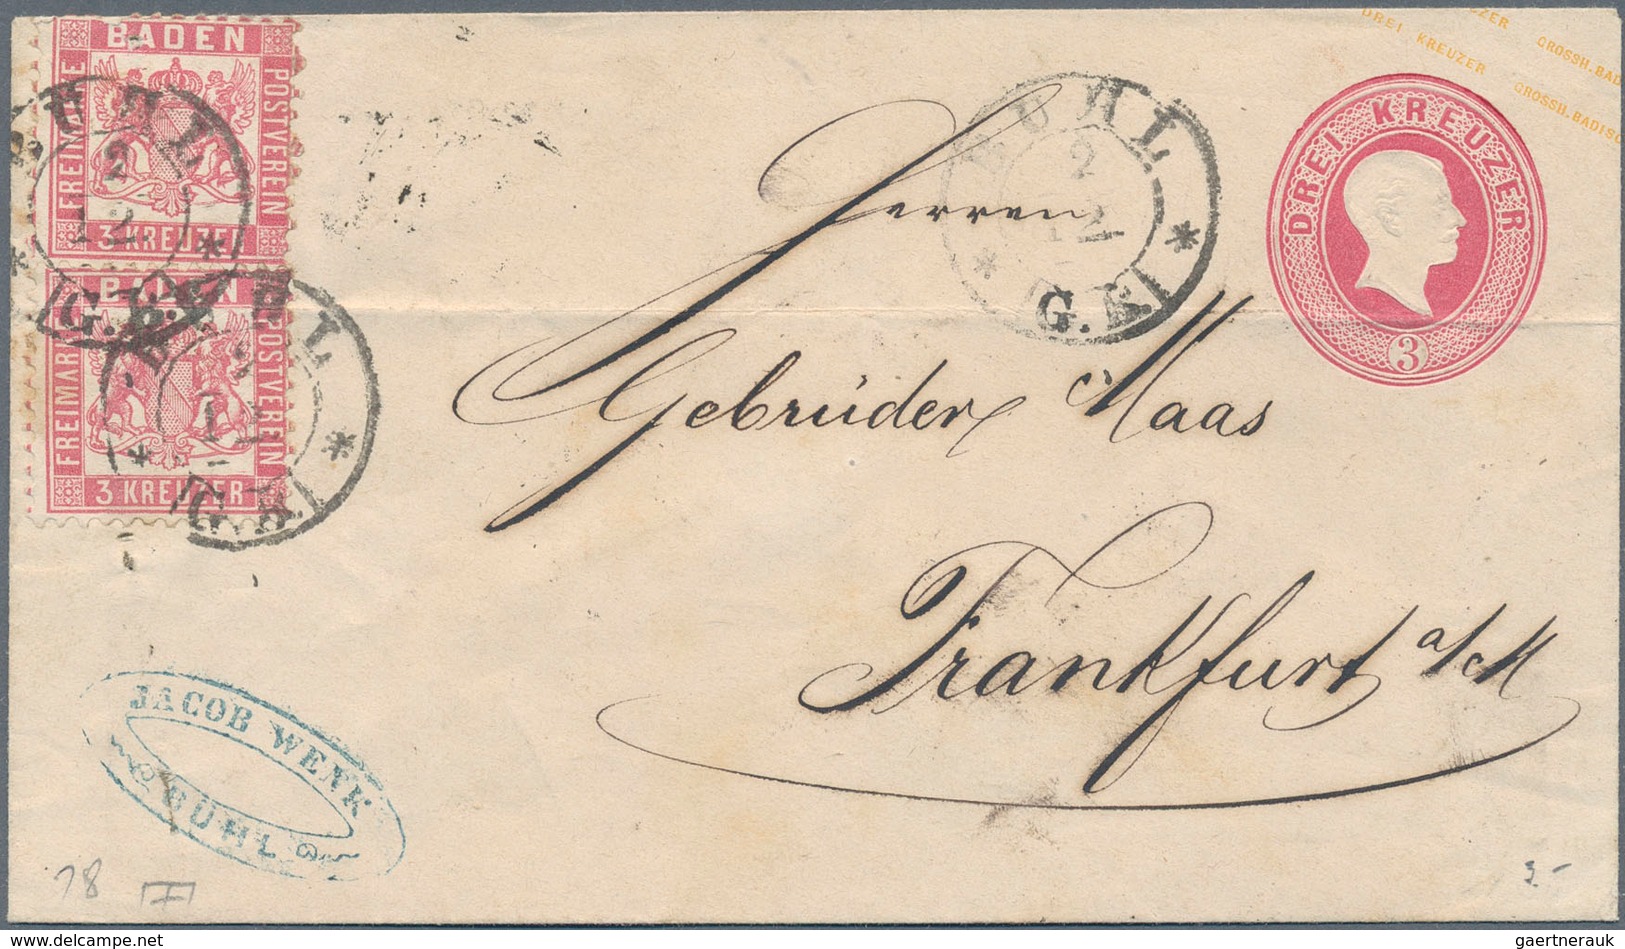 Baden - Marken und Briefe: 1852/1870 (ca.), hochwertige Partie von rund 85 Belegen mit guten Frankat